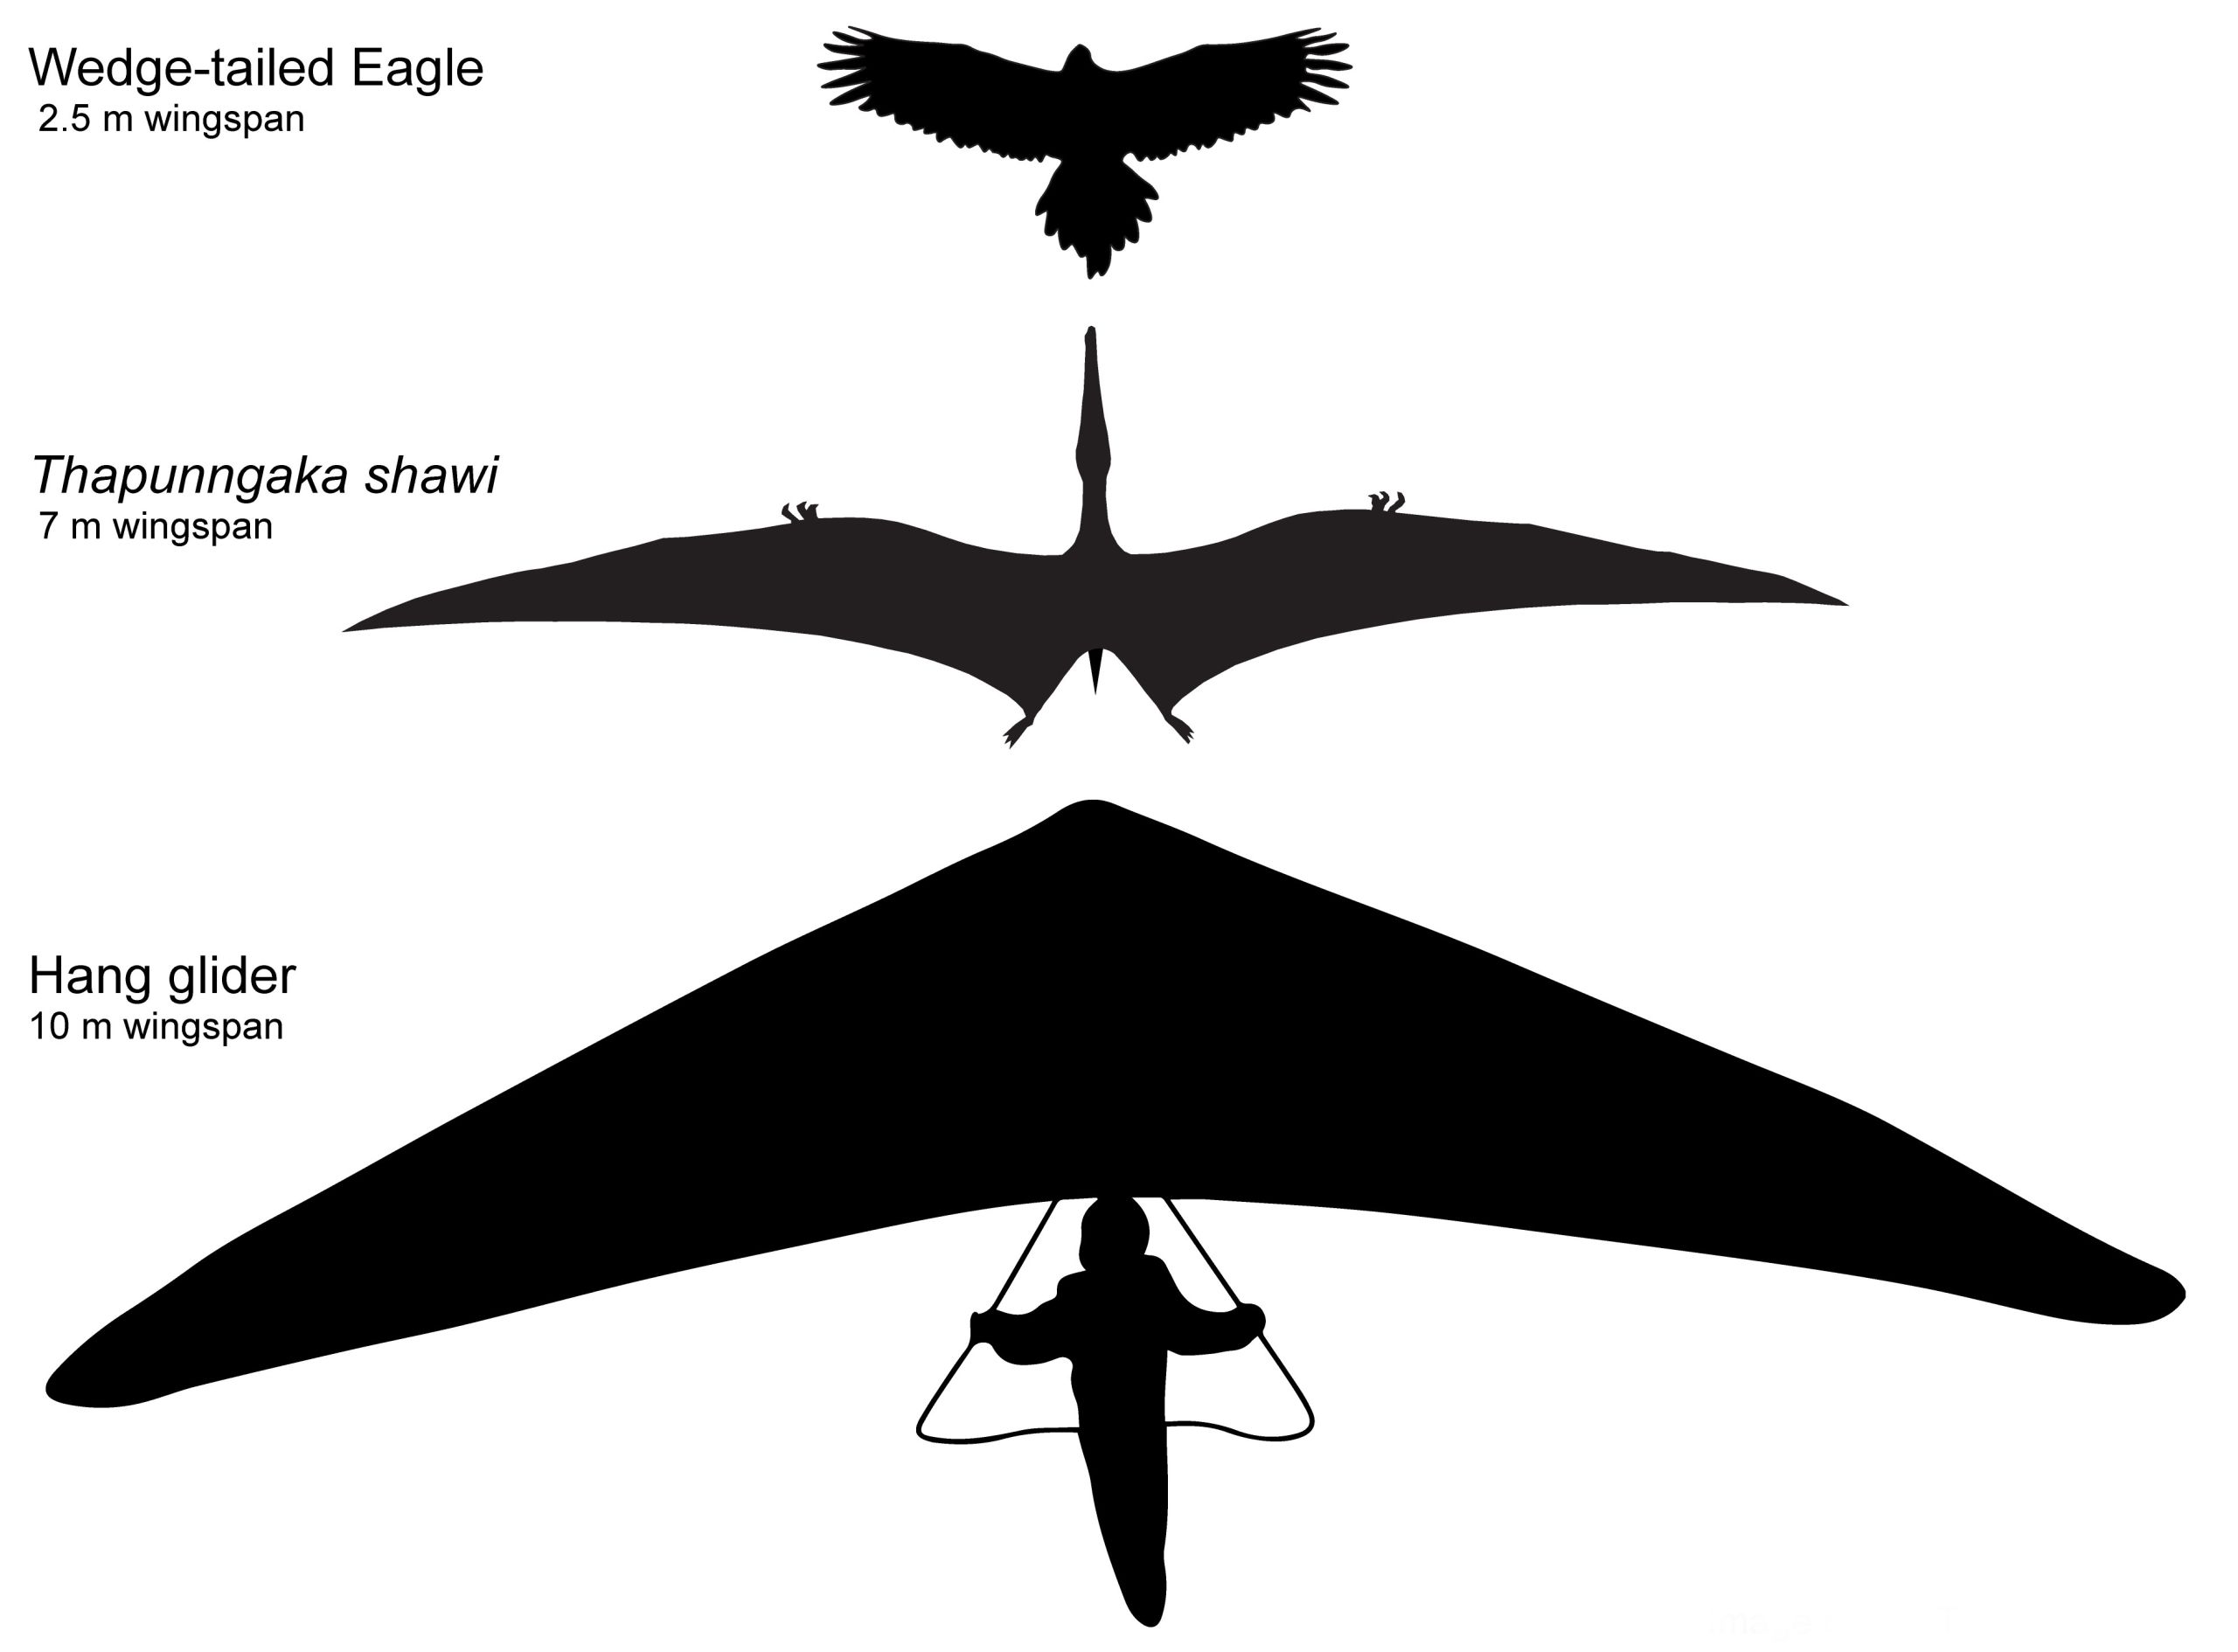 Hipotētiskas Thapunngaka shawi kontūras ar 7 m spārnu plētumu kopā ar ķīļveida ērgli (2.5 m spārnu plētums) un deltaplānu (10 m “spārnu plētums”). Tims Ričardss